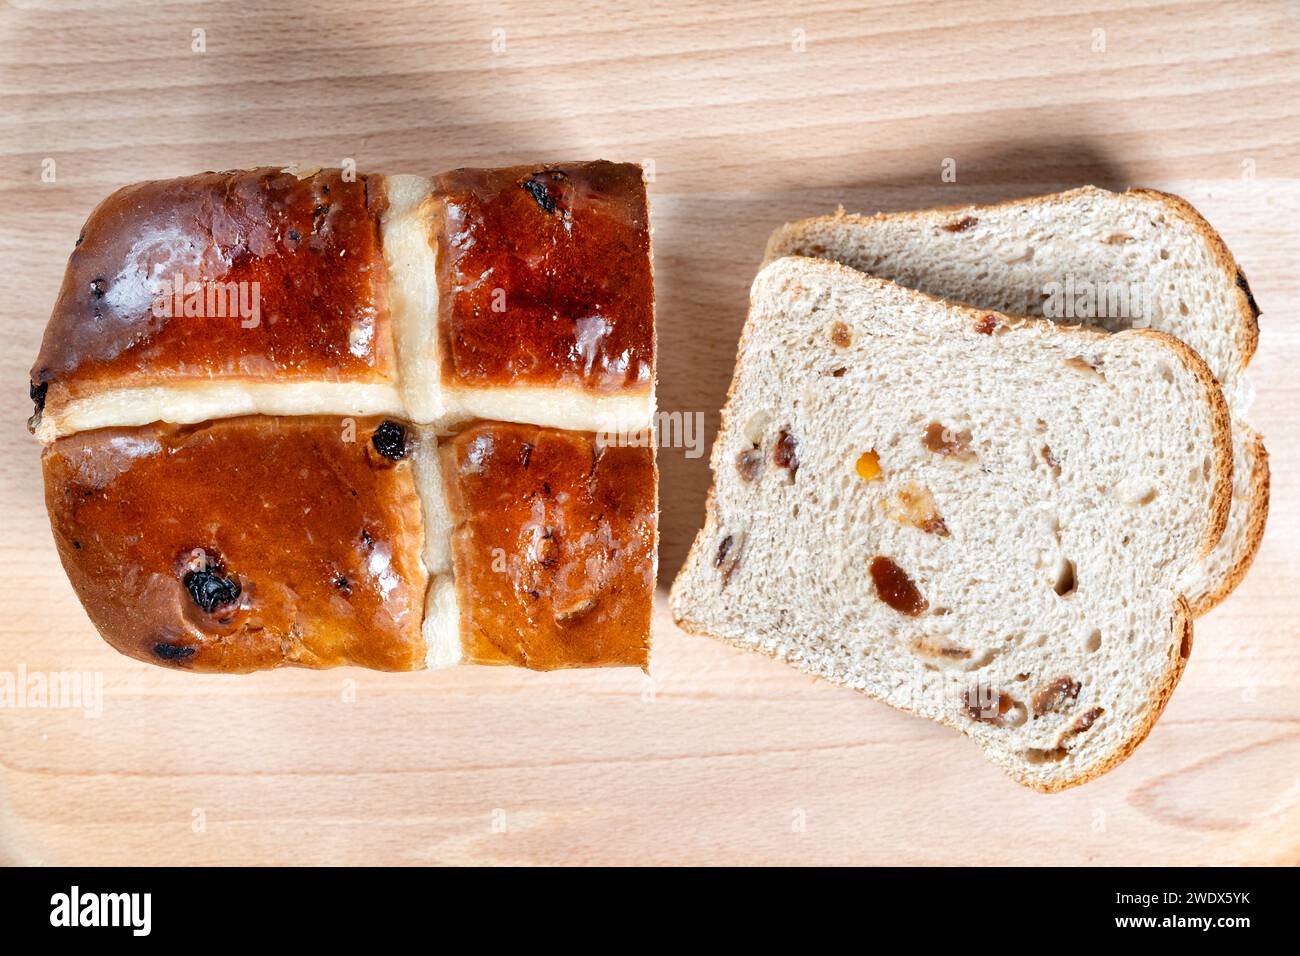 Royaume-Uni, Bristol : un pain chaud de 400 g de pain chaud au pain. Le pain épicé aux fruits est glacé et décoré d'une croix. Un régal traditionnel de Pâques Banque D'Images